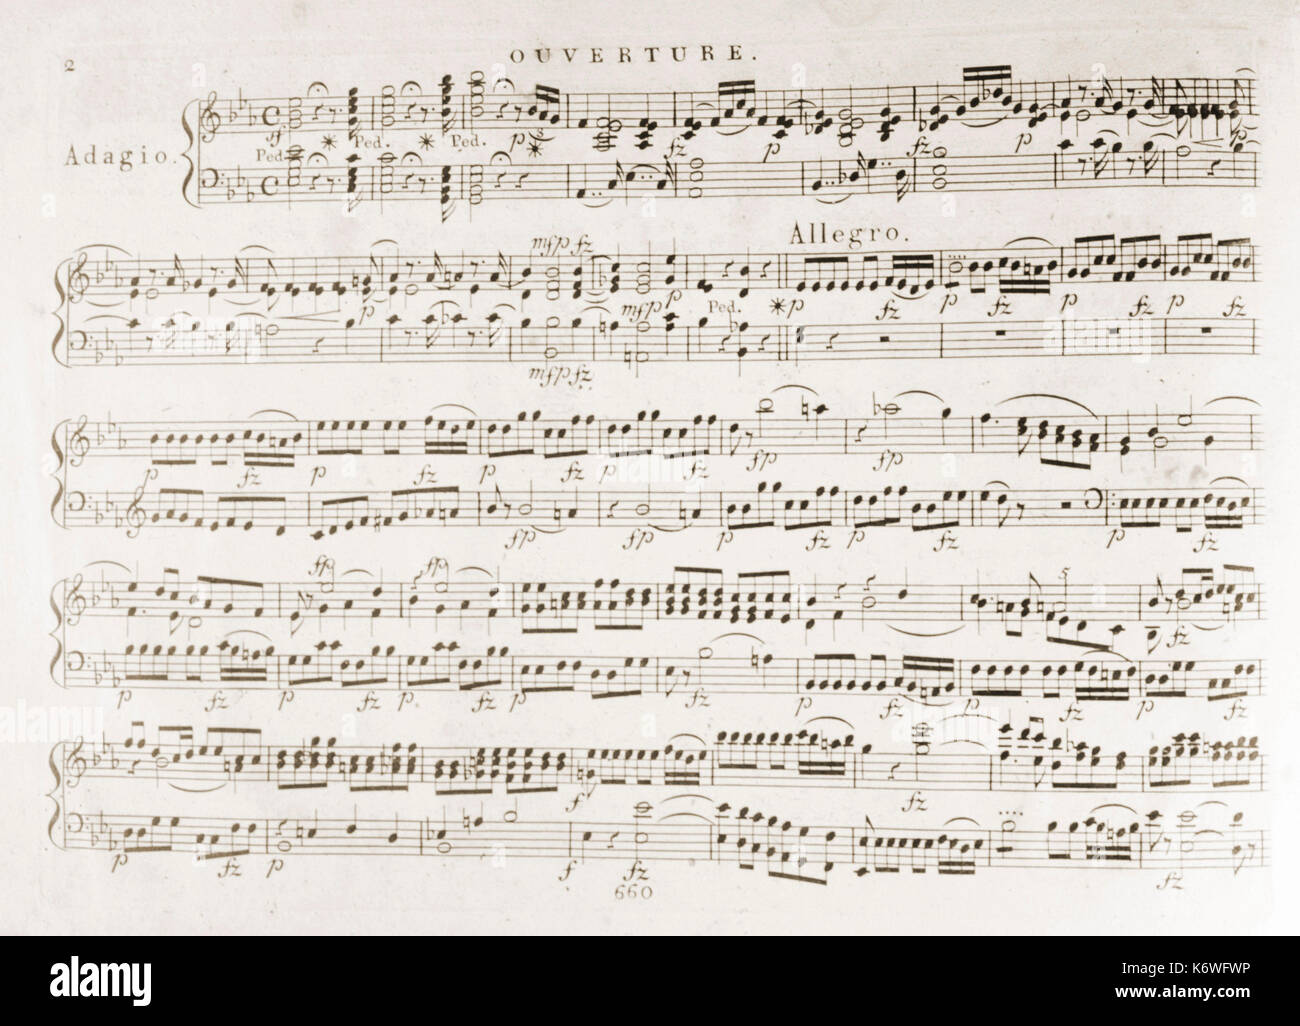 Klavierauszug von Score - Beginn der Ouvertüre von Wolfgang Amadeus Mozarts "Zauberflöte". Österreichischen Komponisten, 27. Januar 1756 - vom 5. Dezember 1791. Der Kühne veröffentlicht, c 1815 von den ursprünglichen Platten Stockfoto